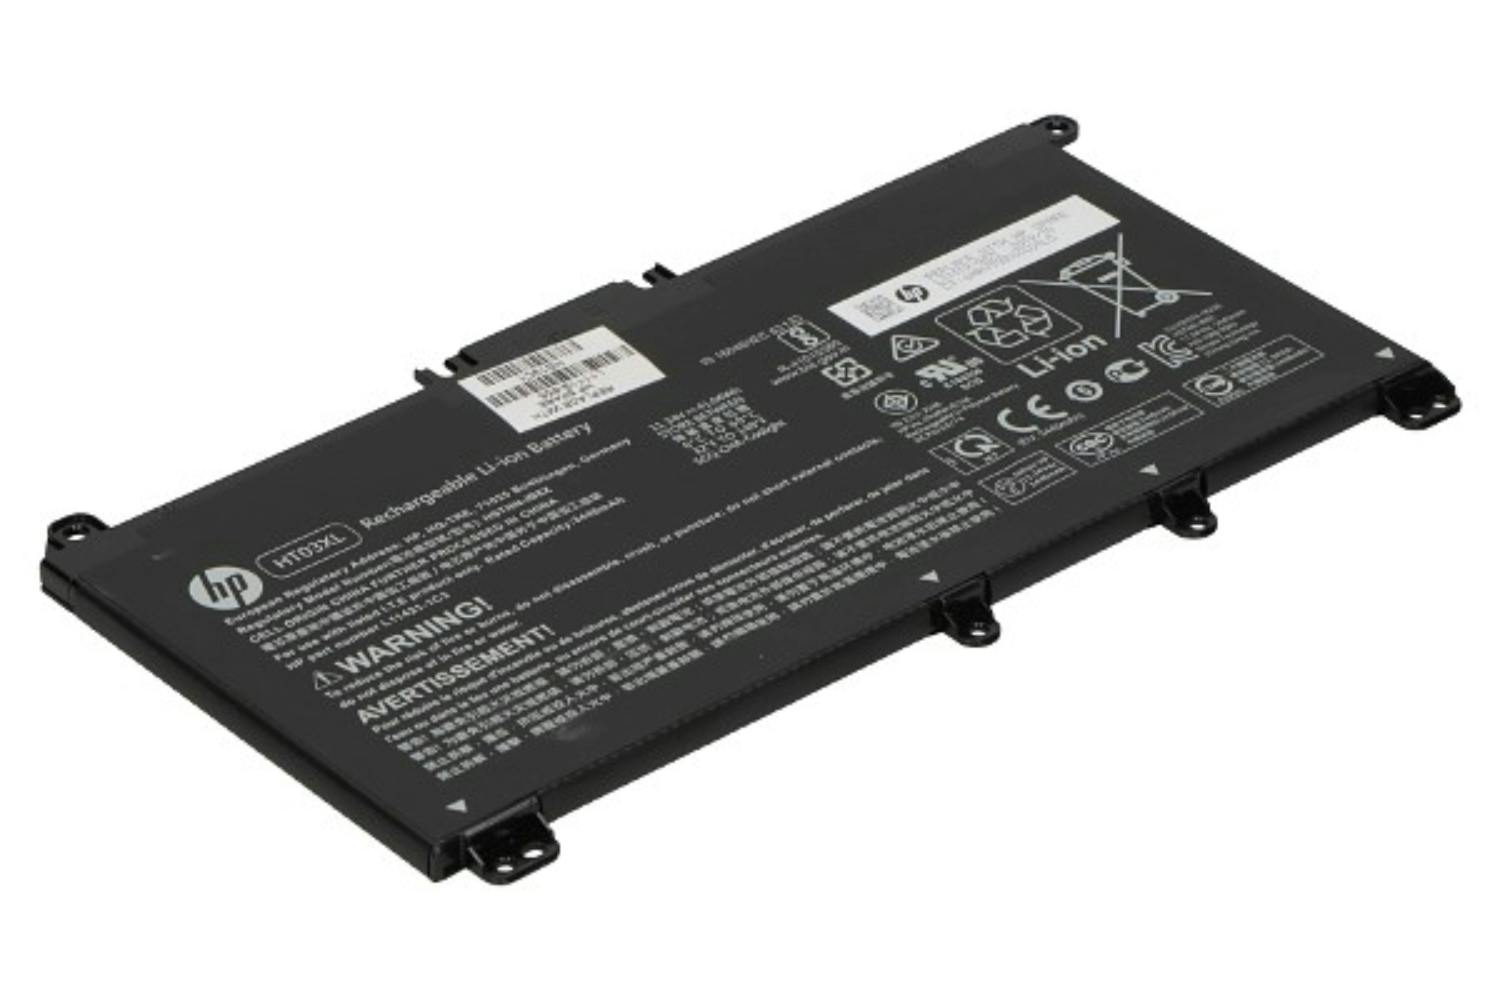 HP L11119-855 3440mAh Main Battery Pack